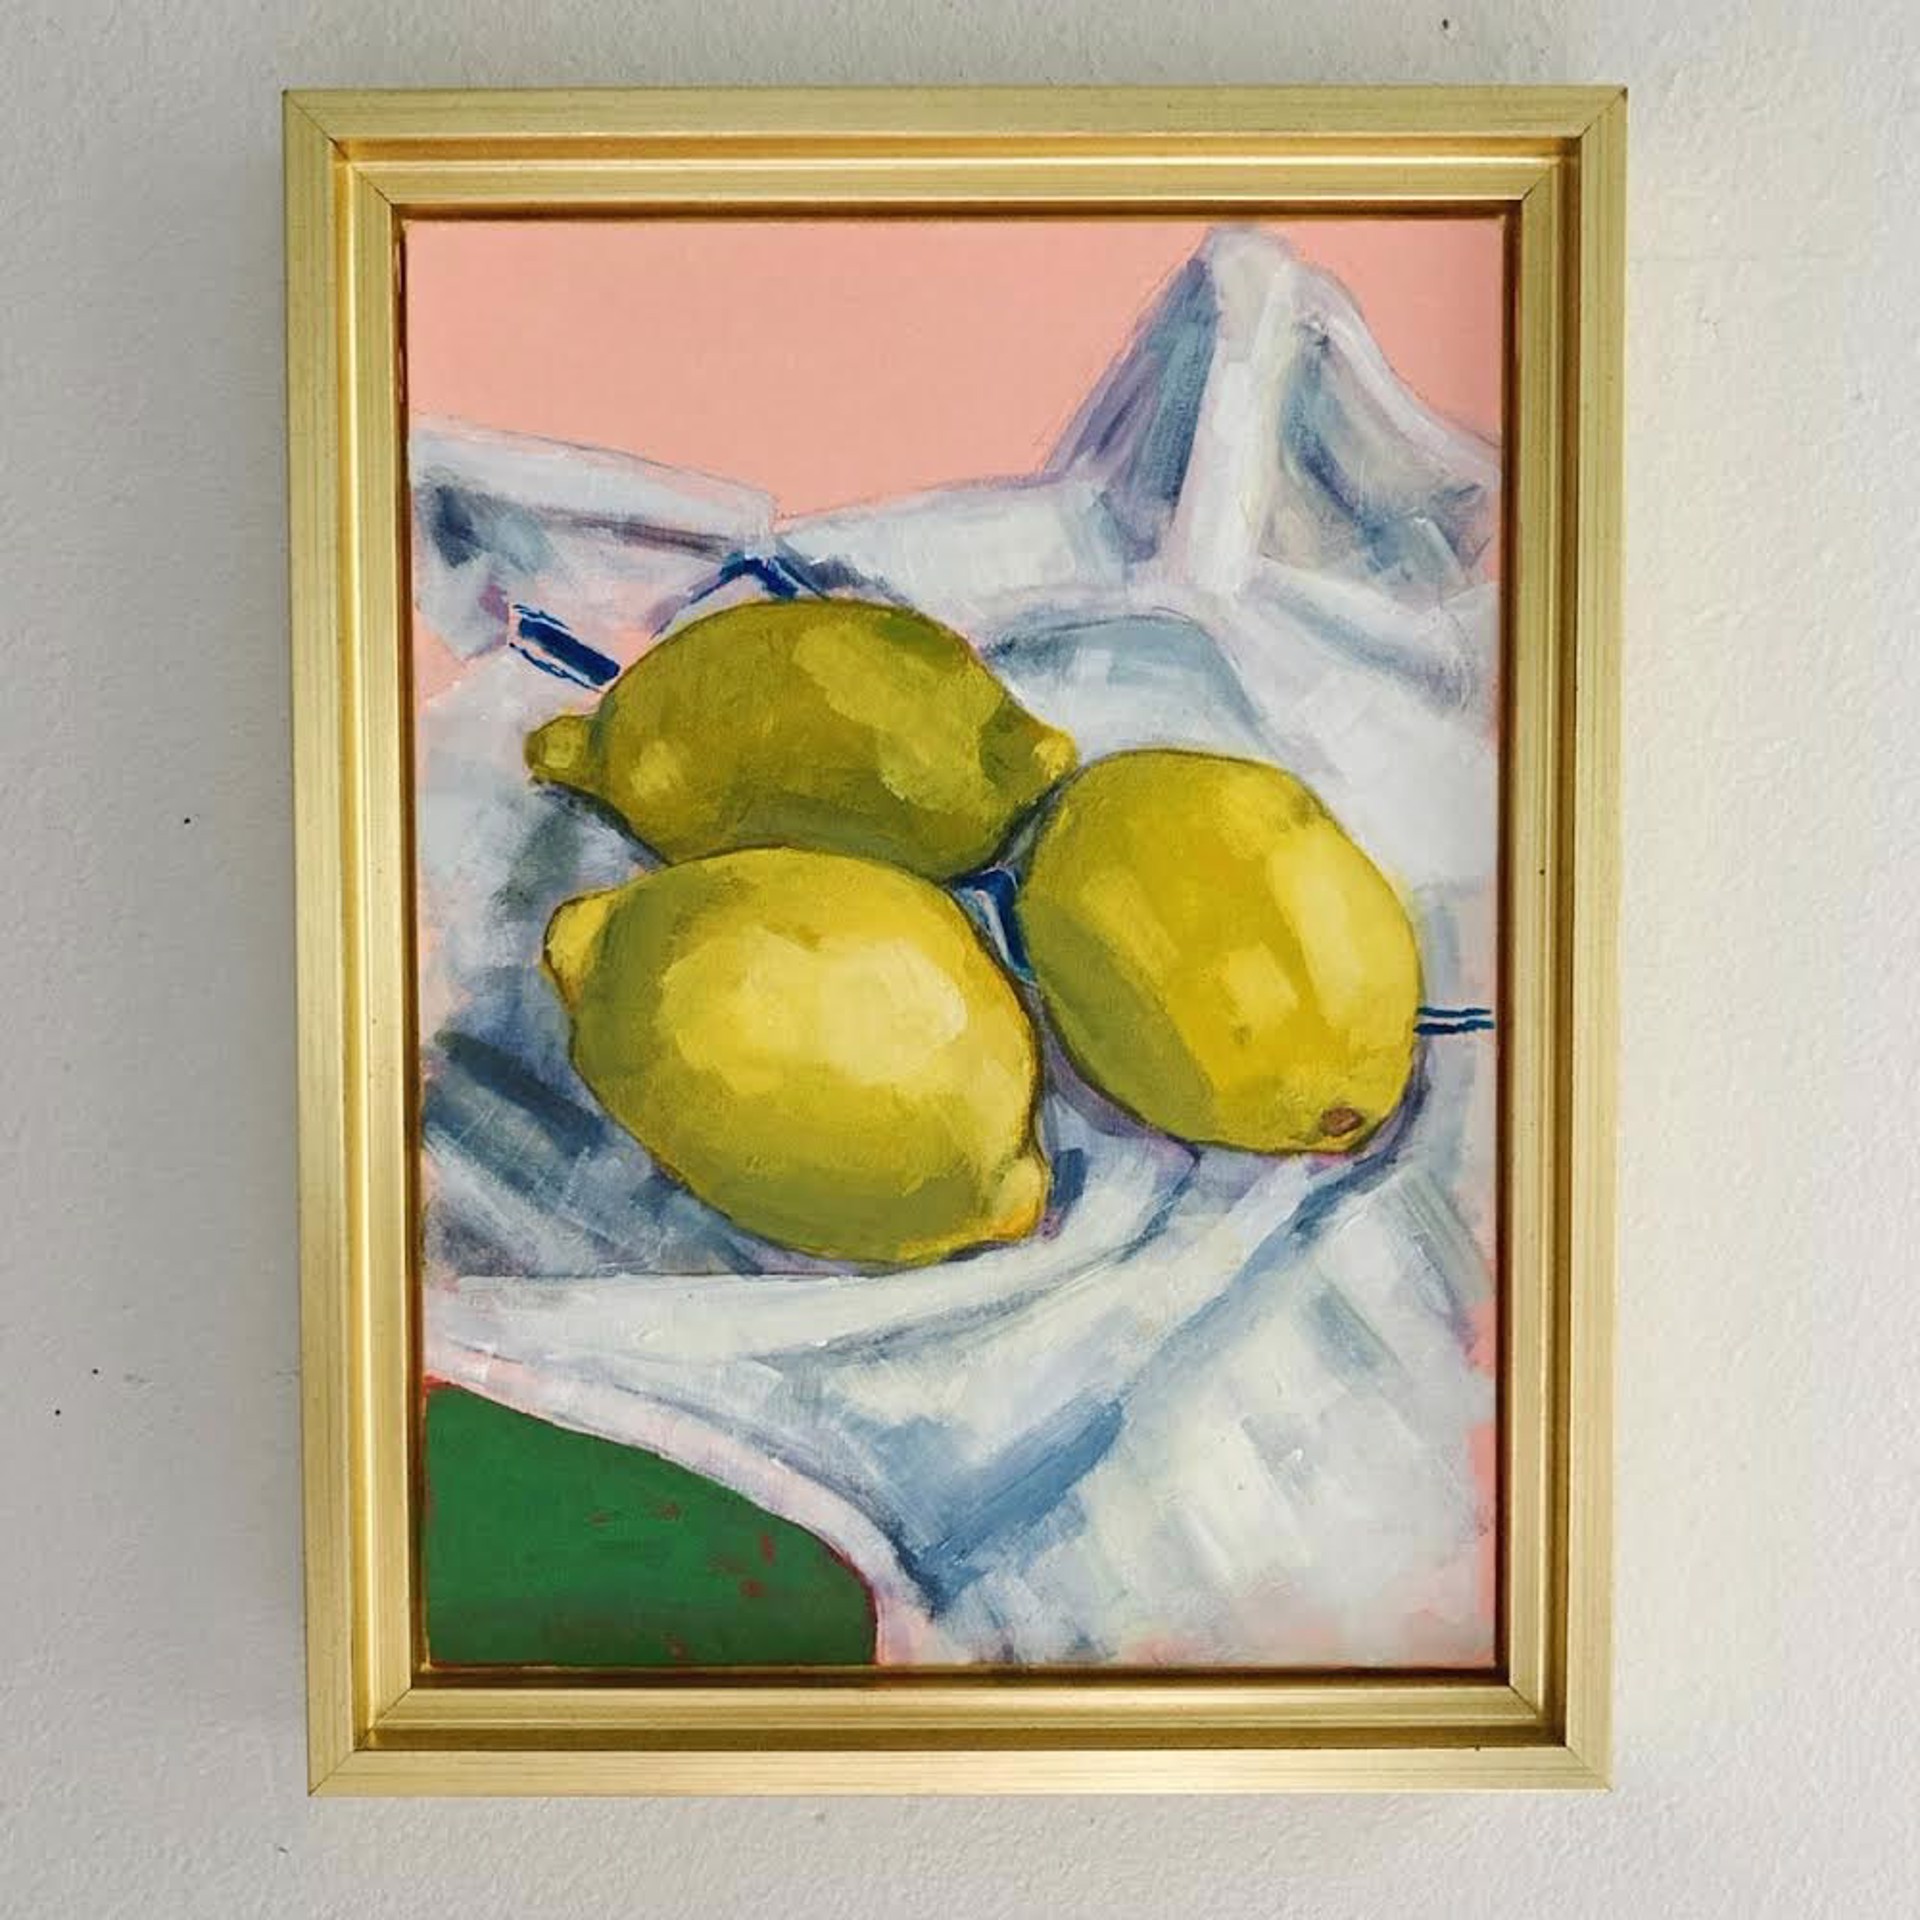 Lemons on a Dishtowel, (framed) by Maggie Stickney